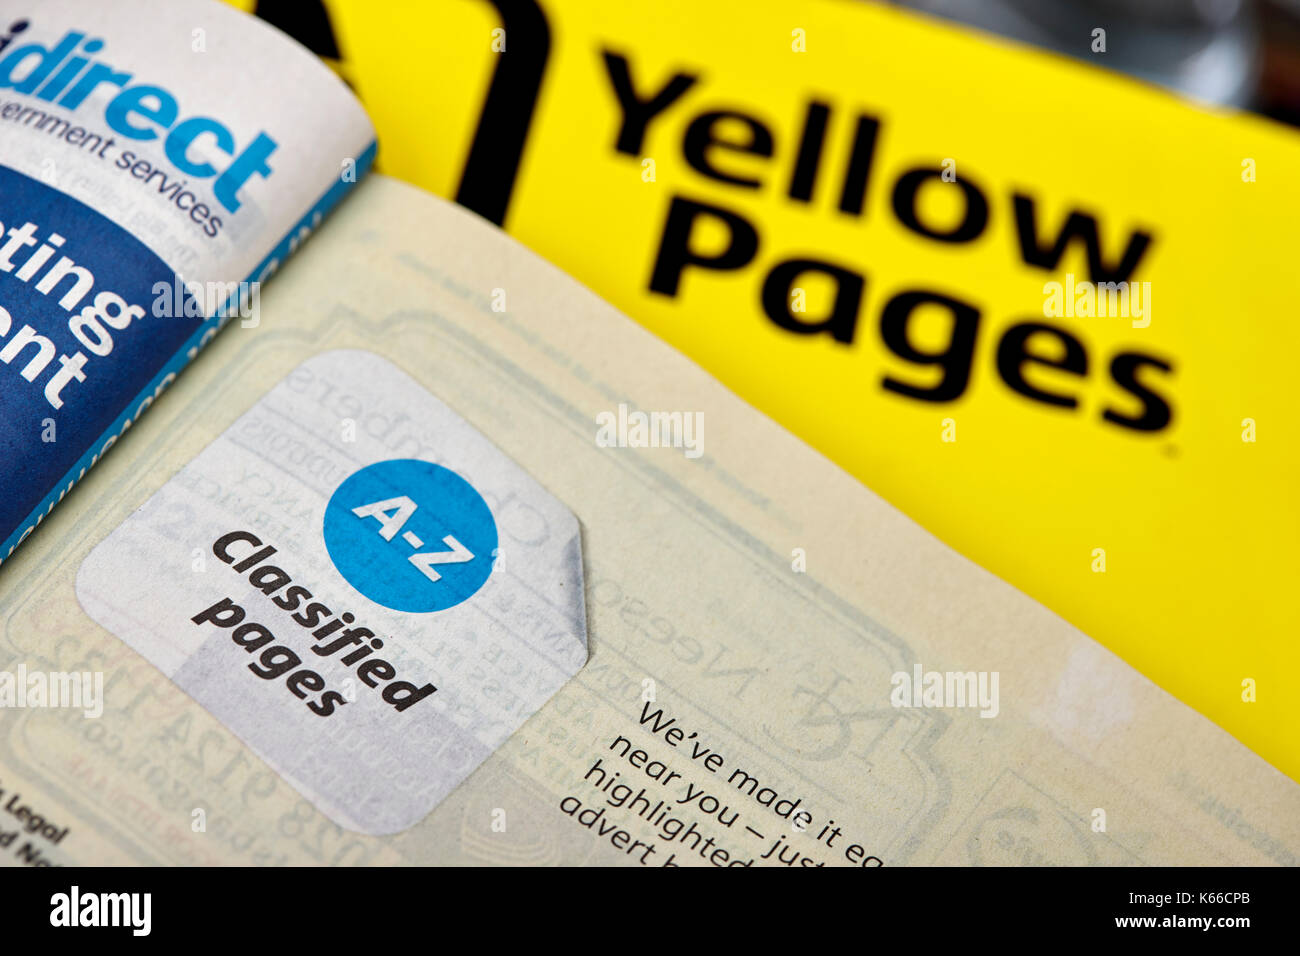 A-z Gelbe Seiten klassifiziert Telefon Verzeichnis Papier Ausgabe Großbritannien Stockfoto